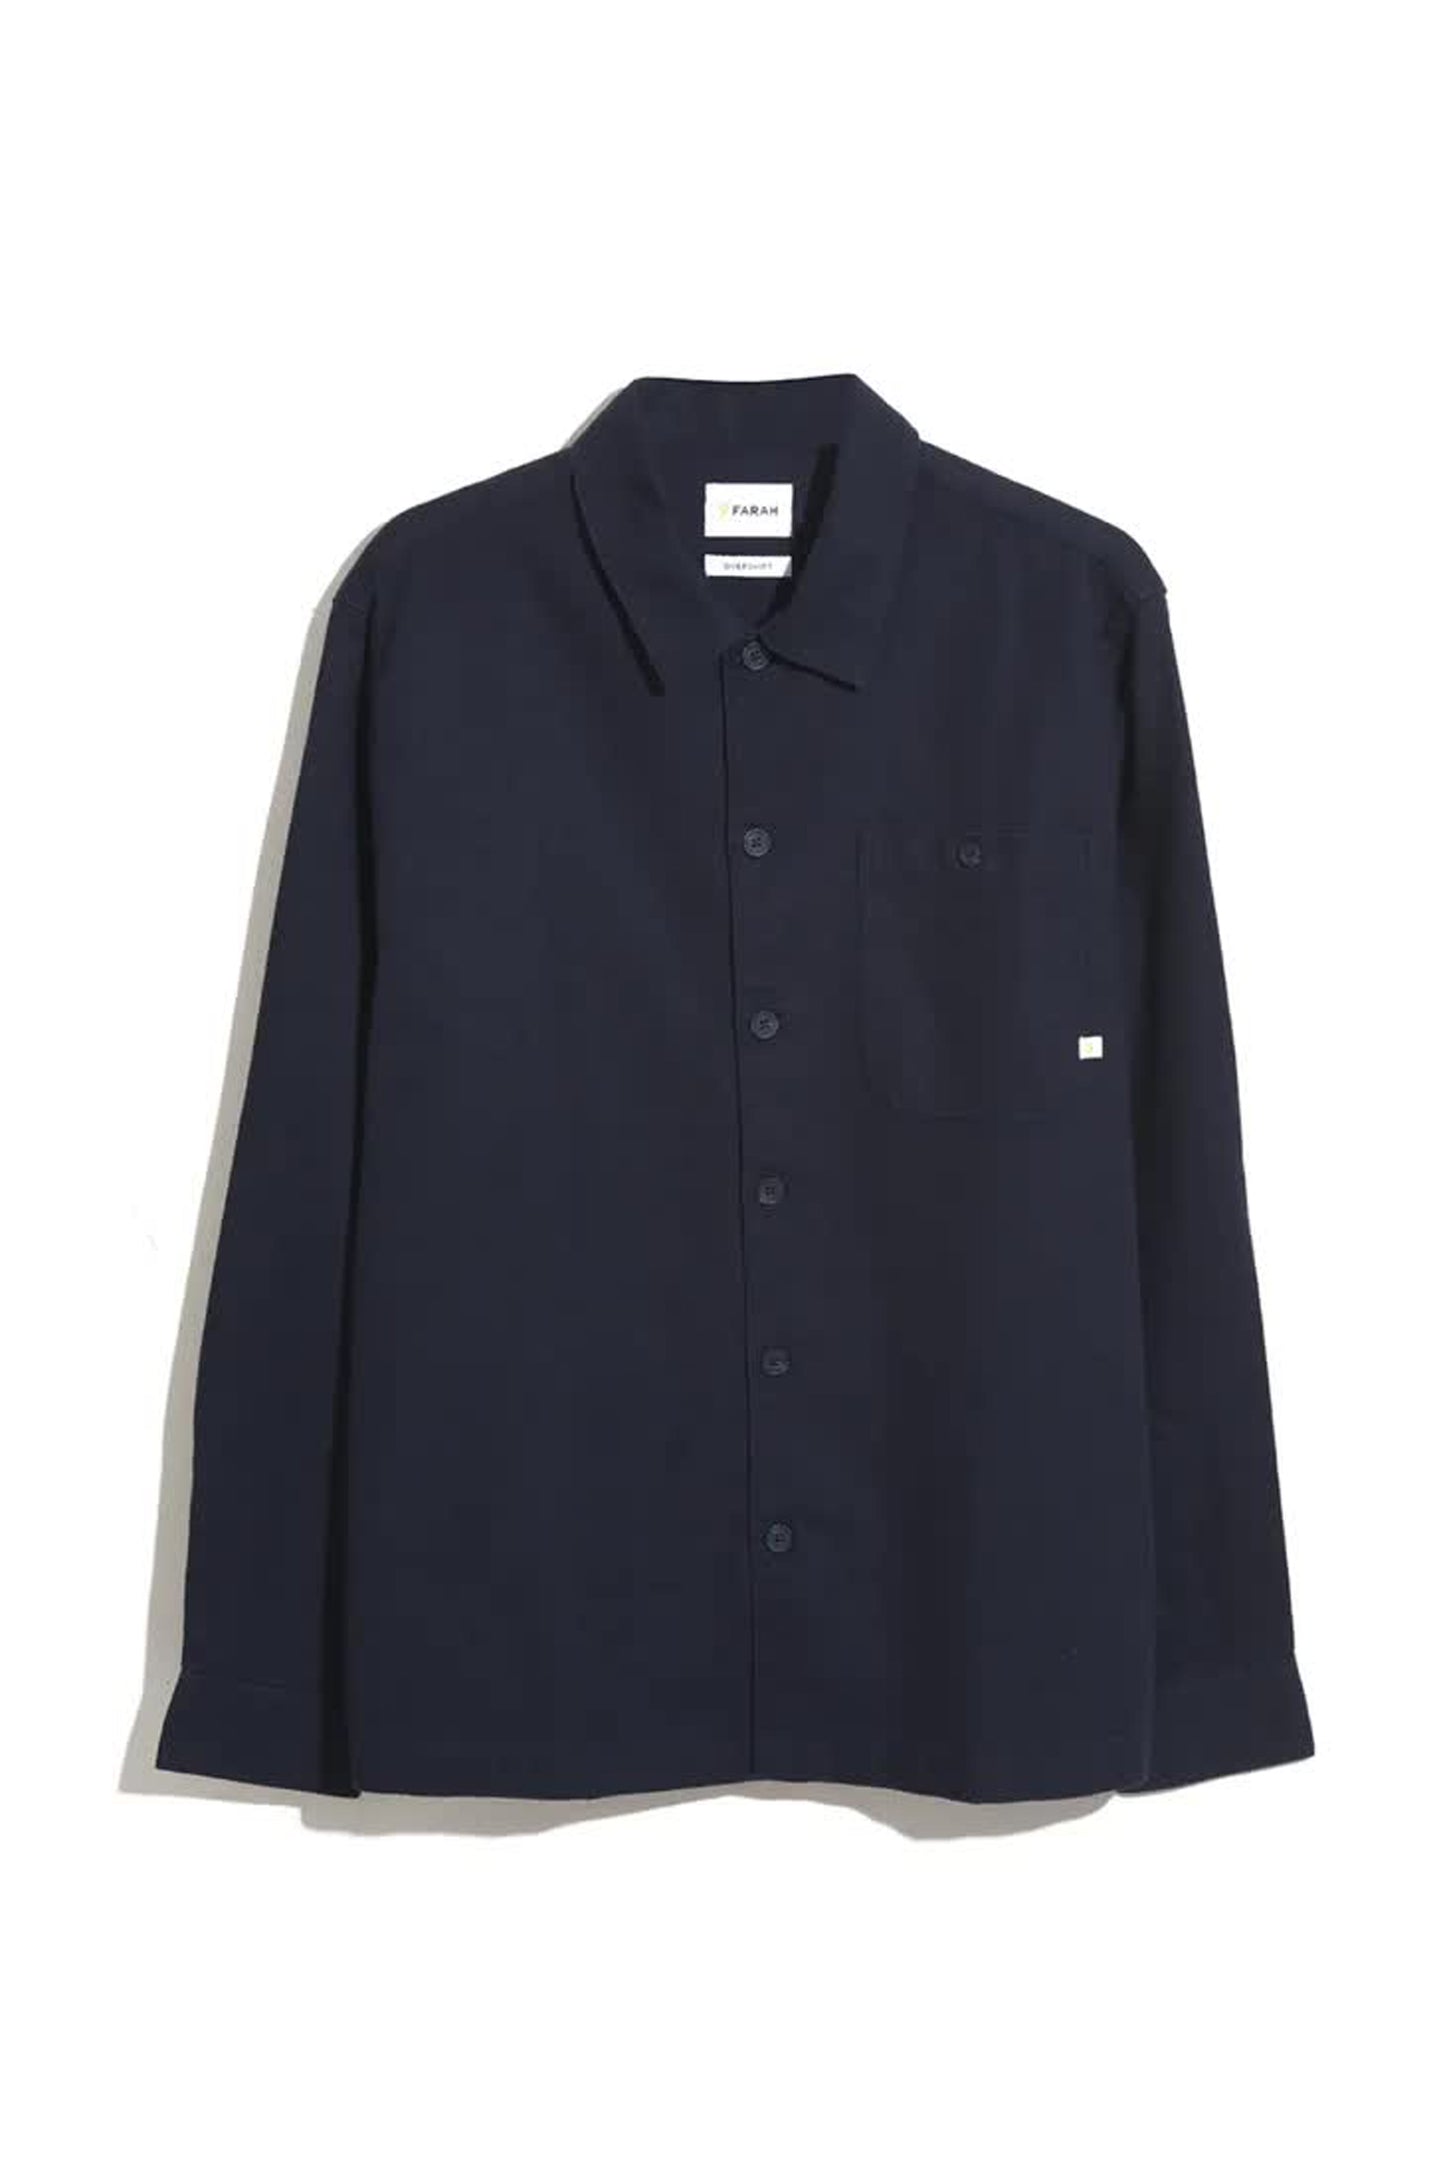 Farah Firmin Relaxed Fit Organic Cotton Long Sleeve Shirt / True Navy